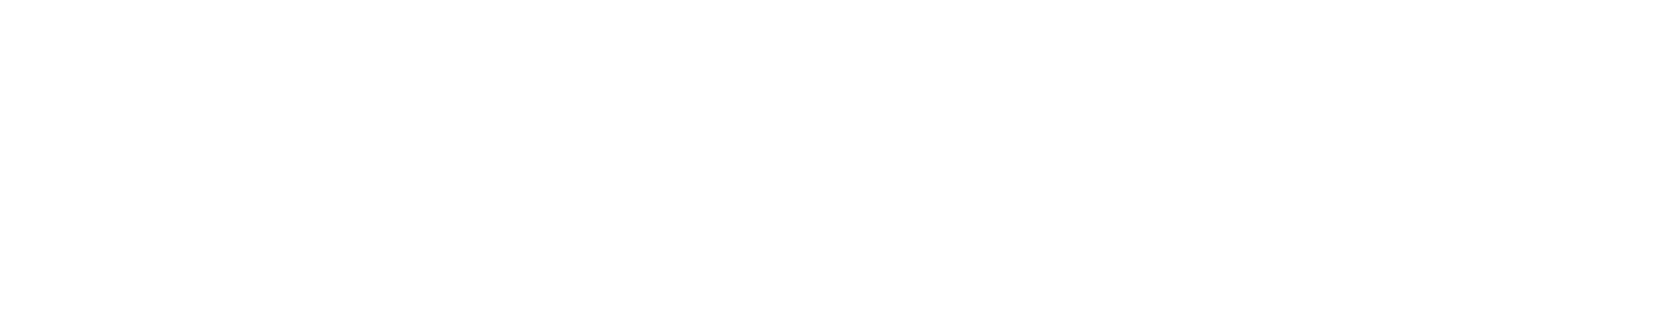 Hummings logo